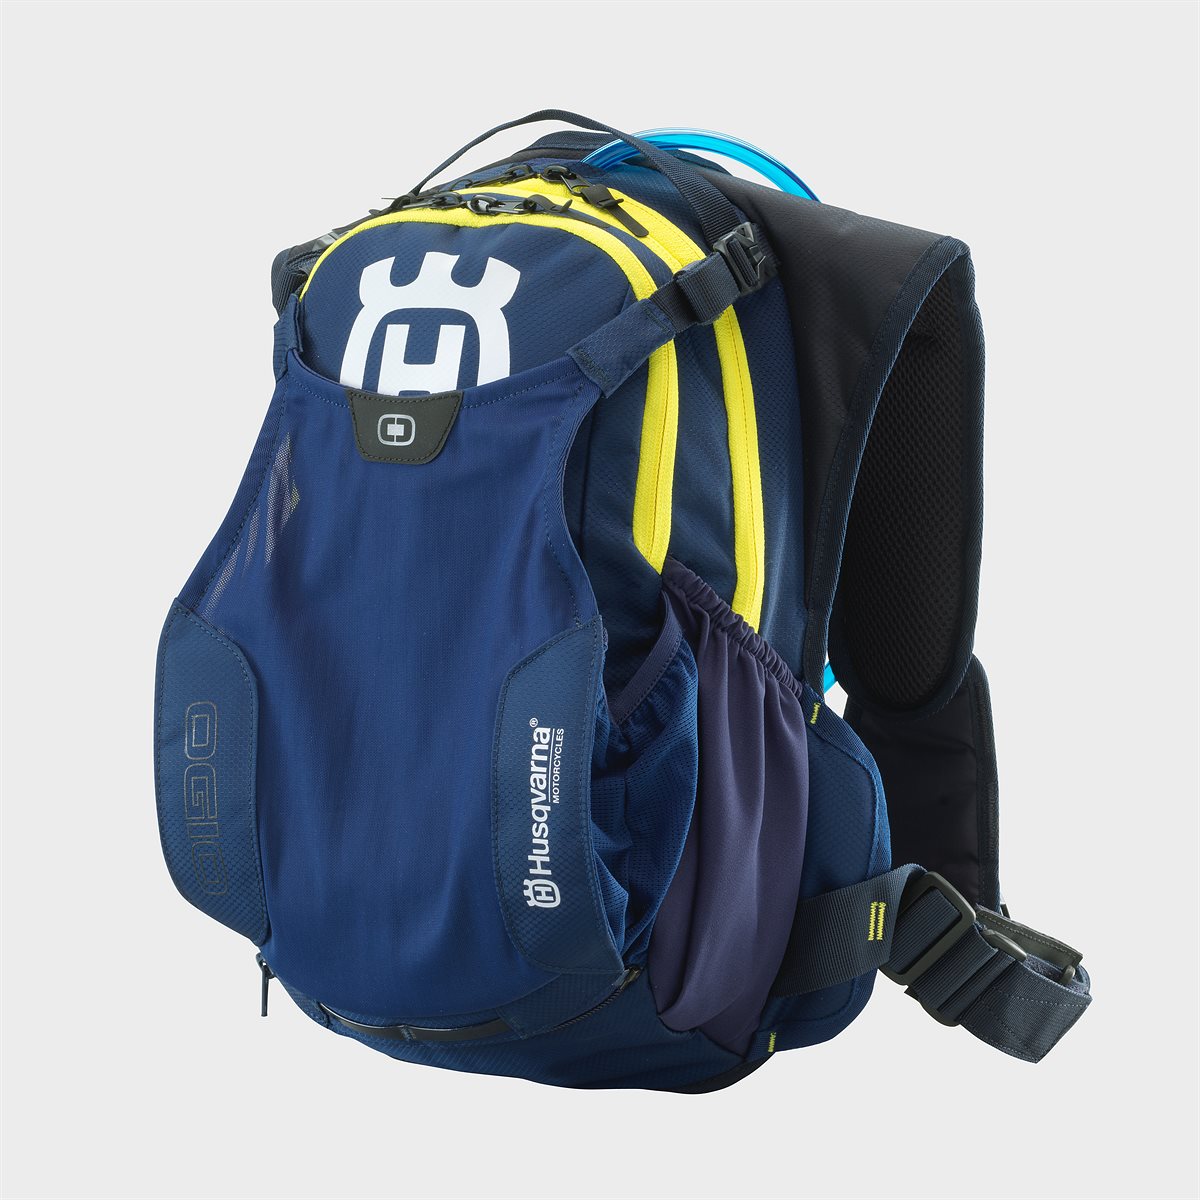 Baja Backpack